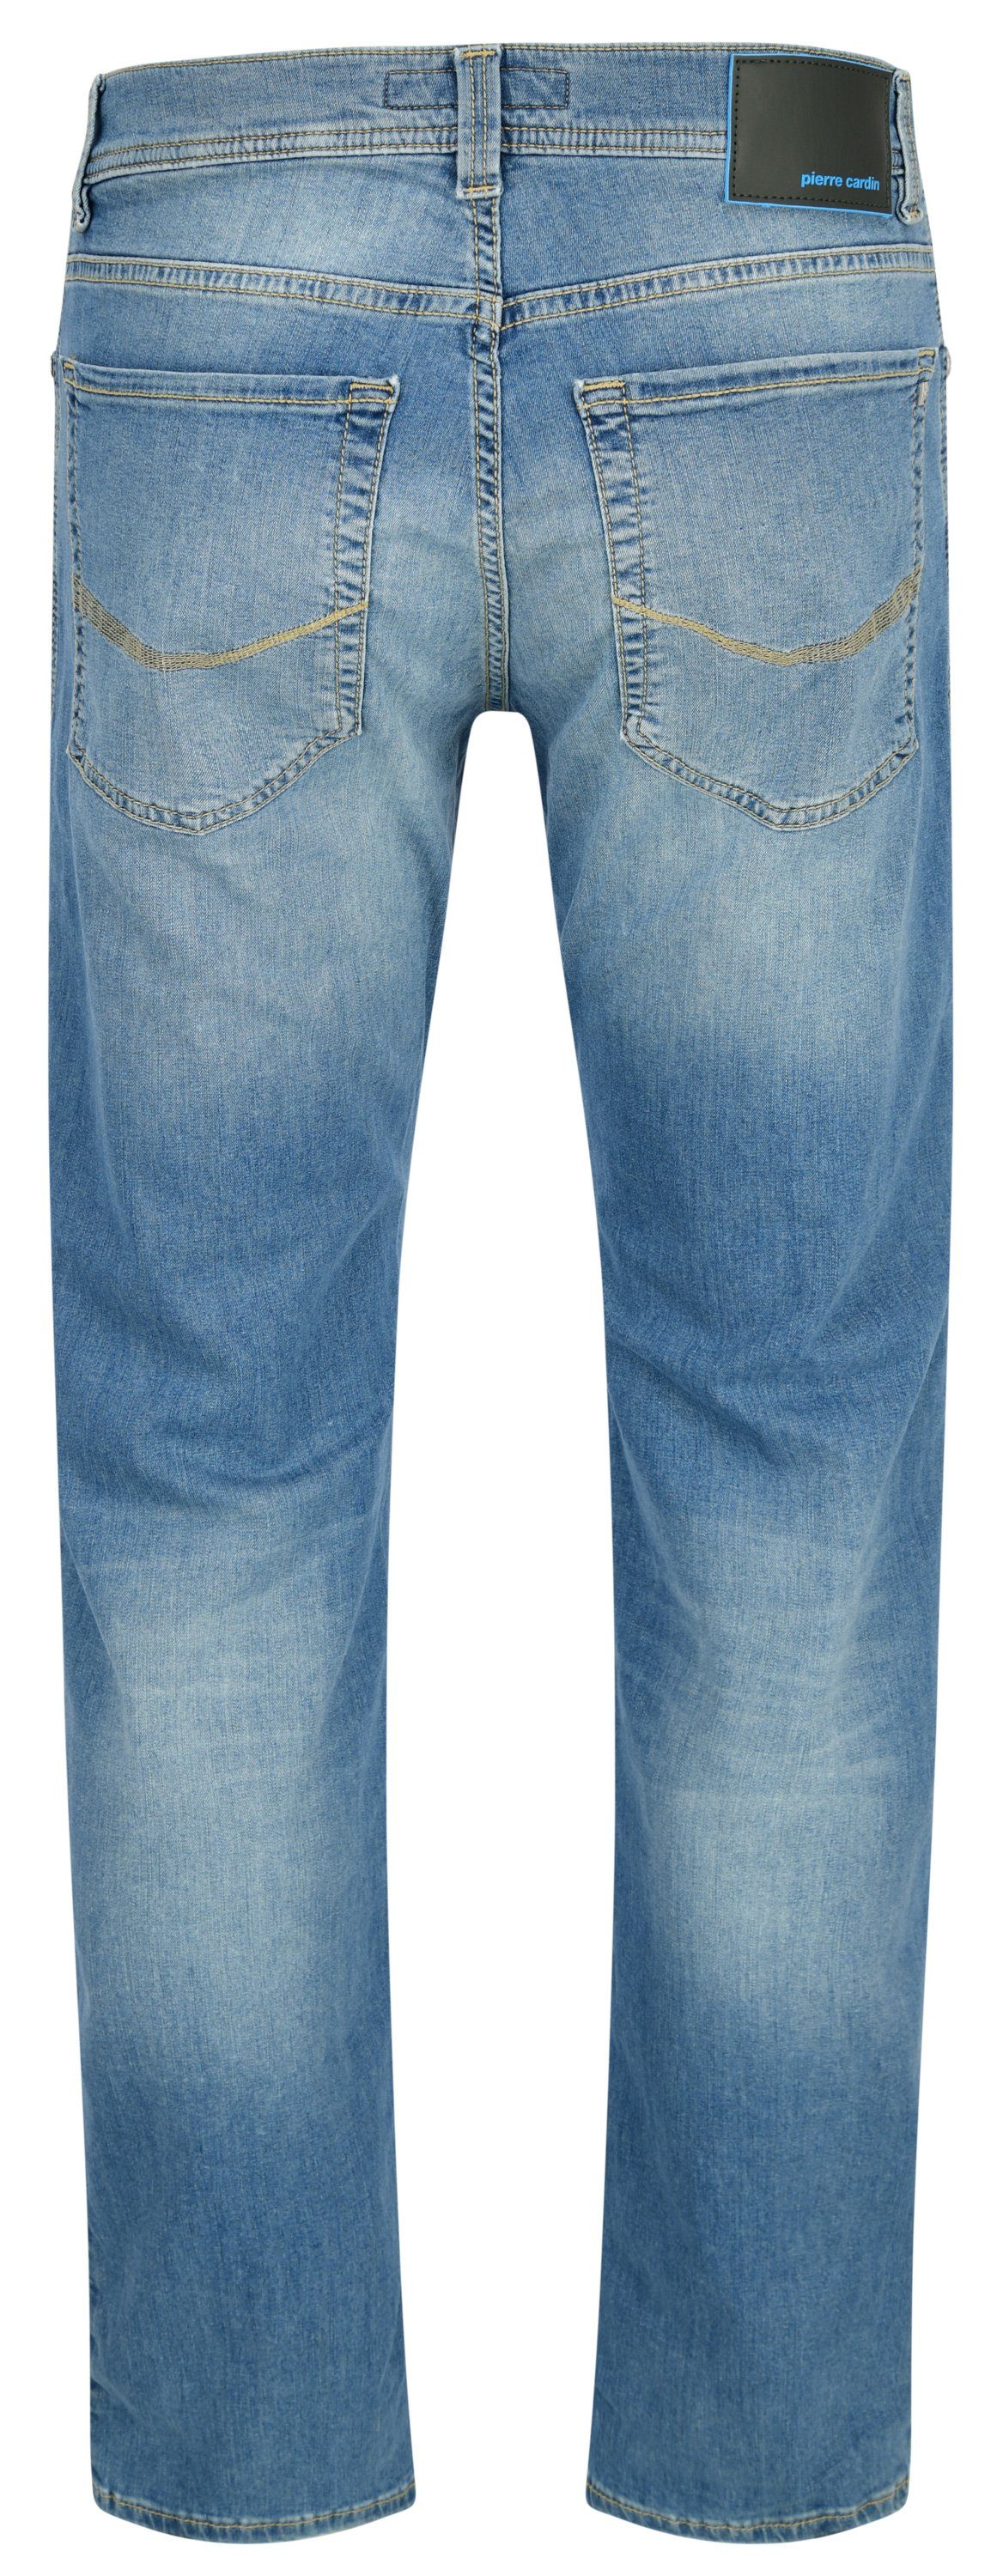 PIERRE light 5-Pocket-Jeans buffies blue TAPERED - 8021.6844 LYON Cardin Pierre used CARDIN 34510